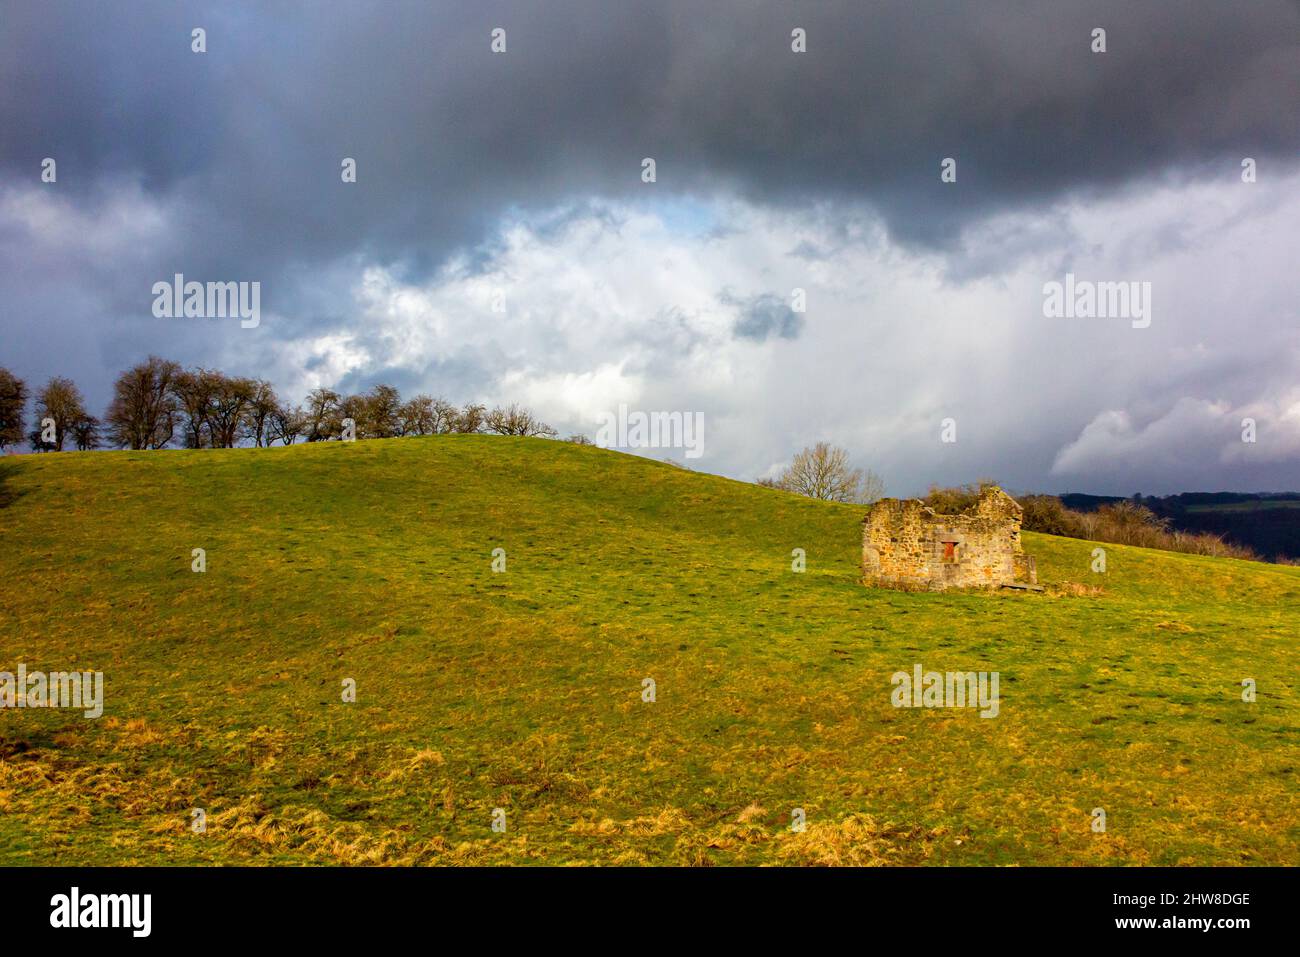 Ruines d'une grange de campagne dans le paysage typique de Peak District à Oaker près de Matlock dans le Derbyshire Dales Angleterre Banque D'Images